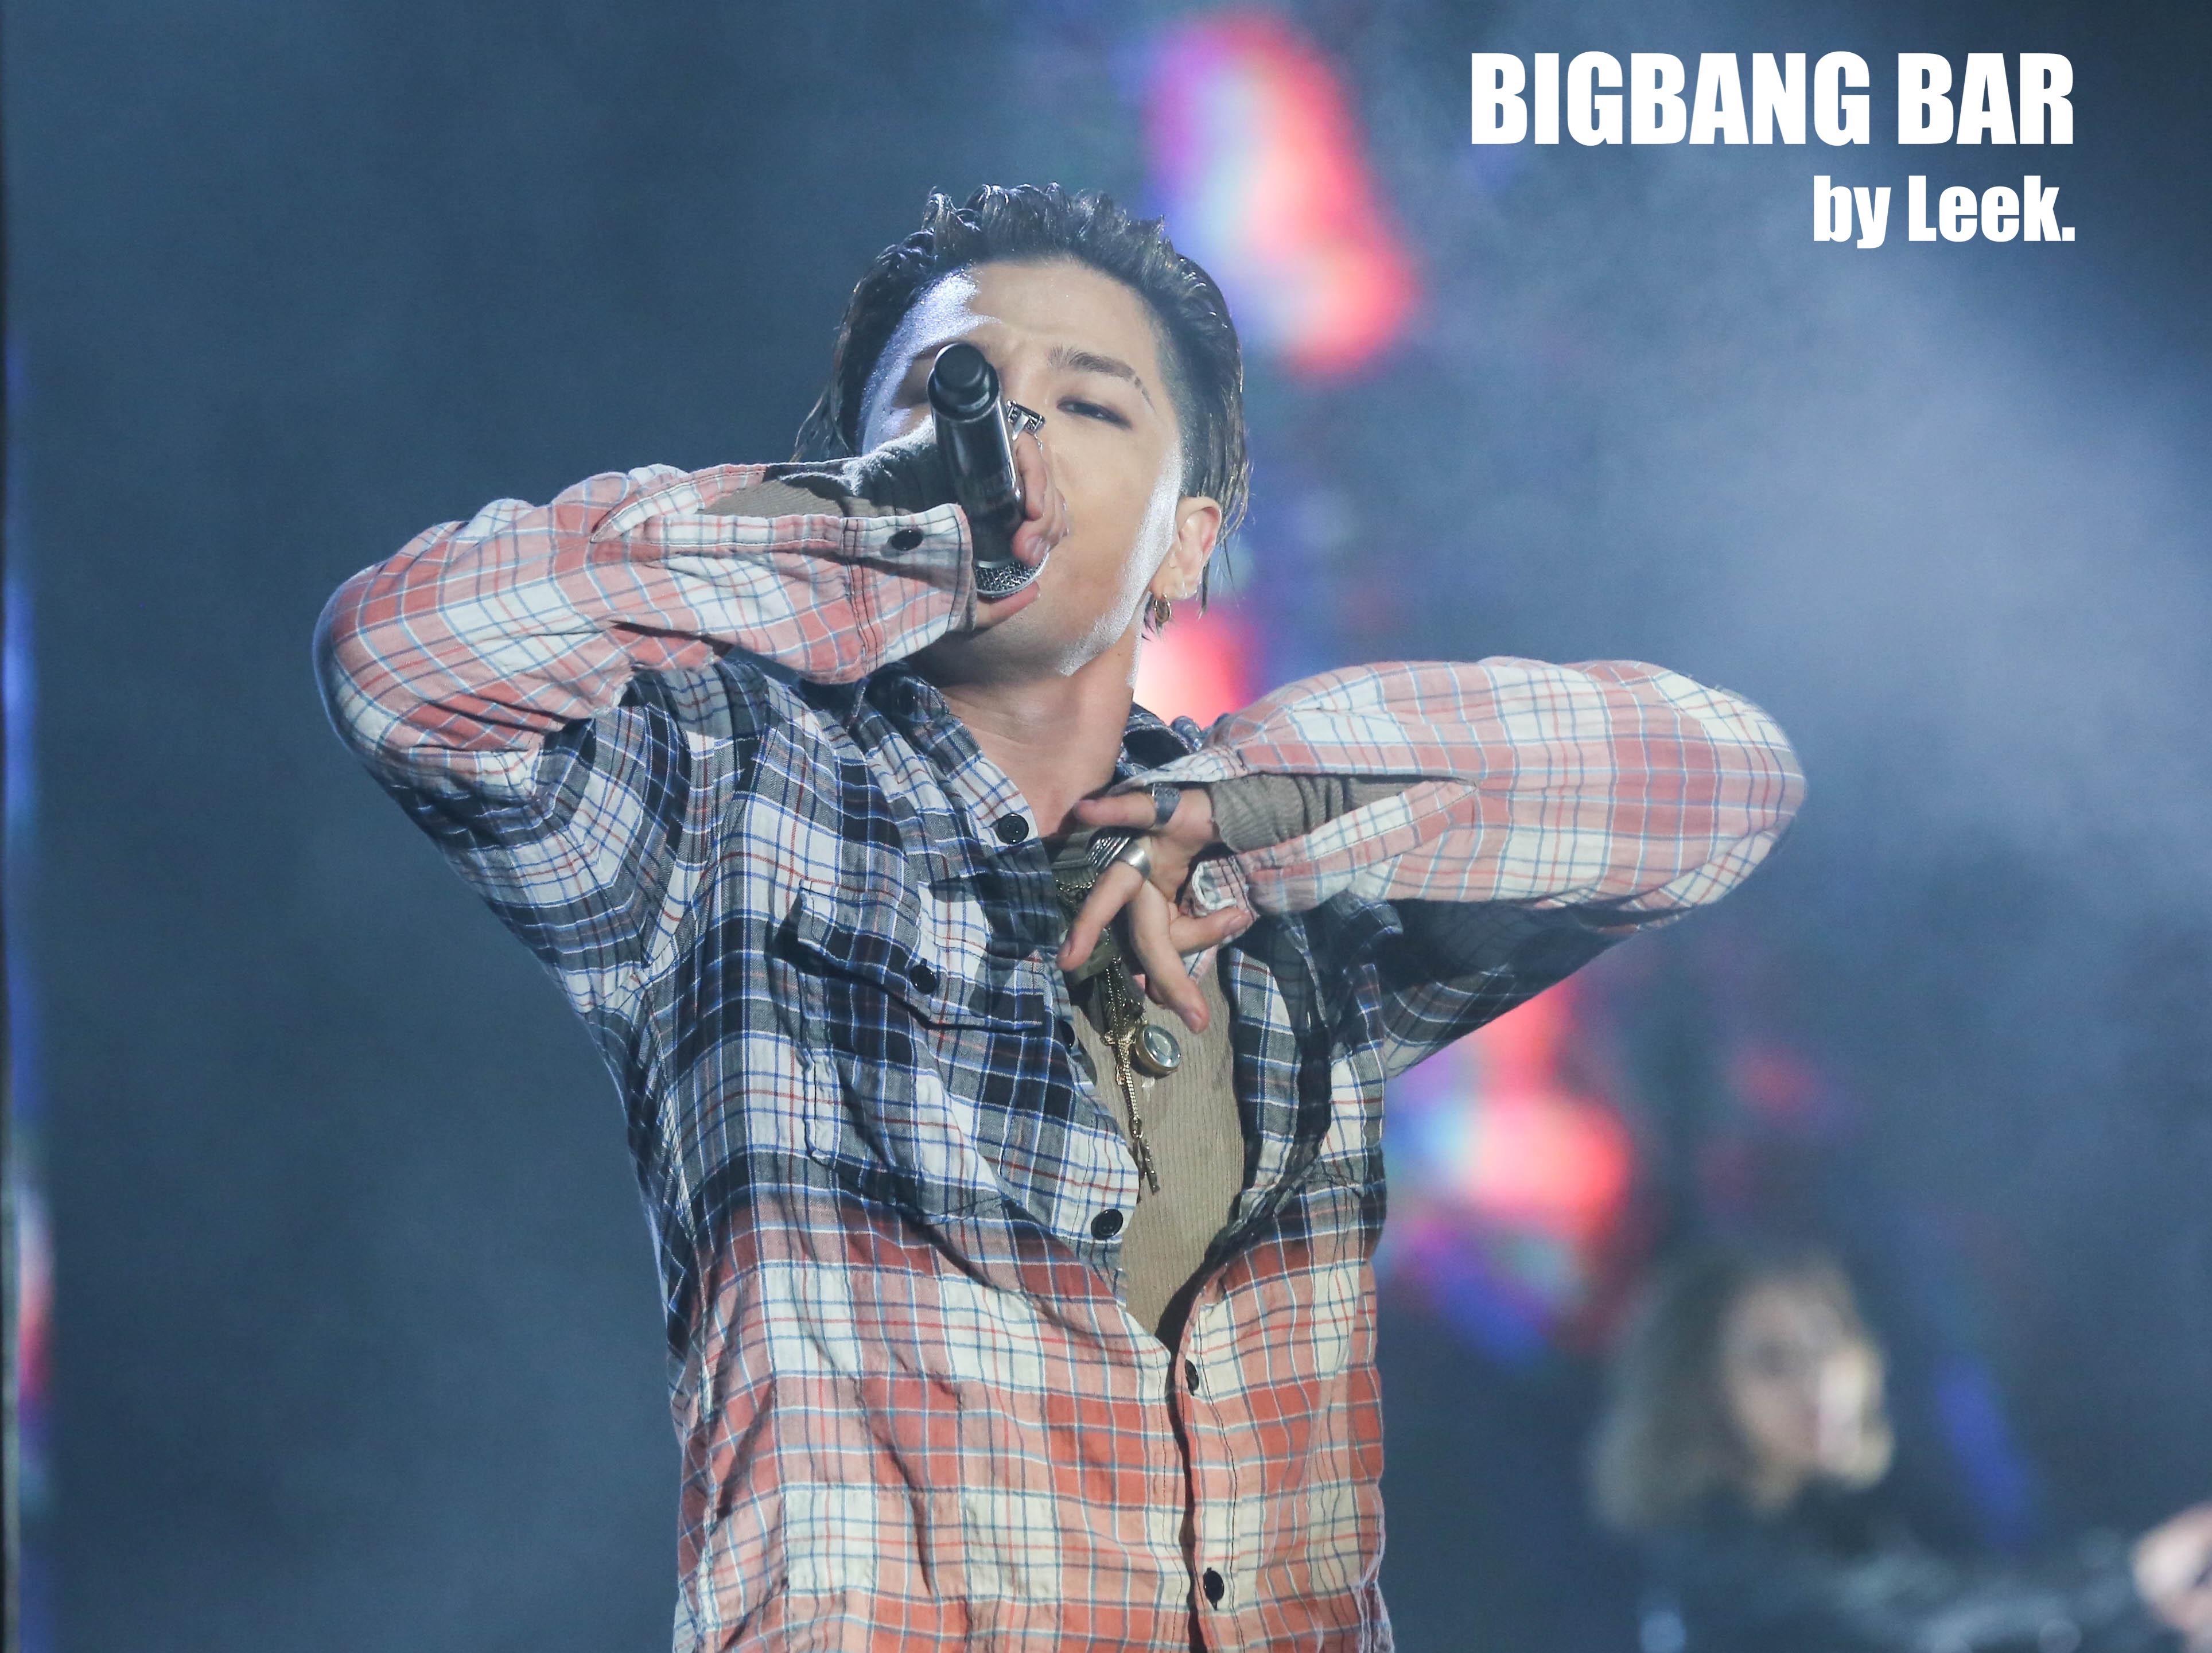 BIGBANG VIPevent Beijing 2016-01-01 By BIGBANGBar By Leek (32)